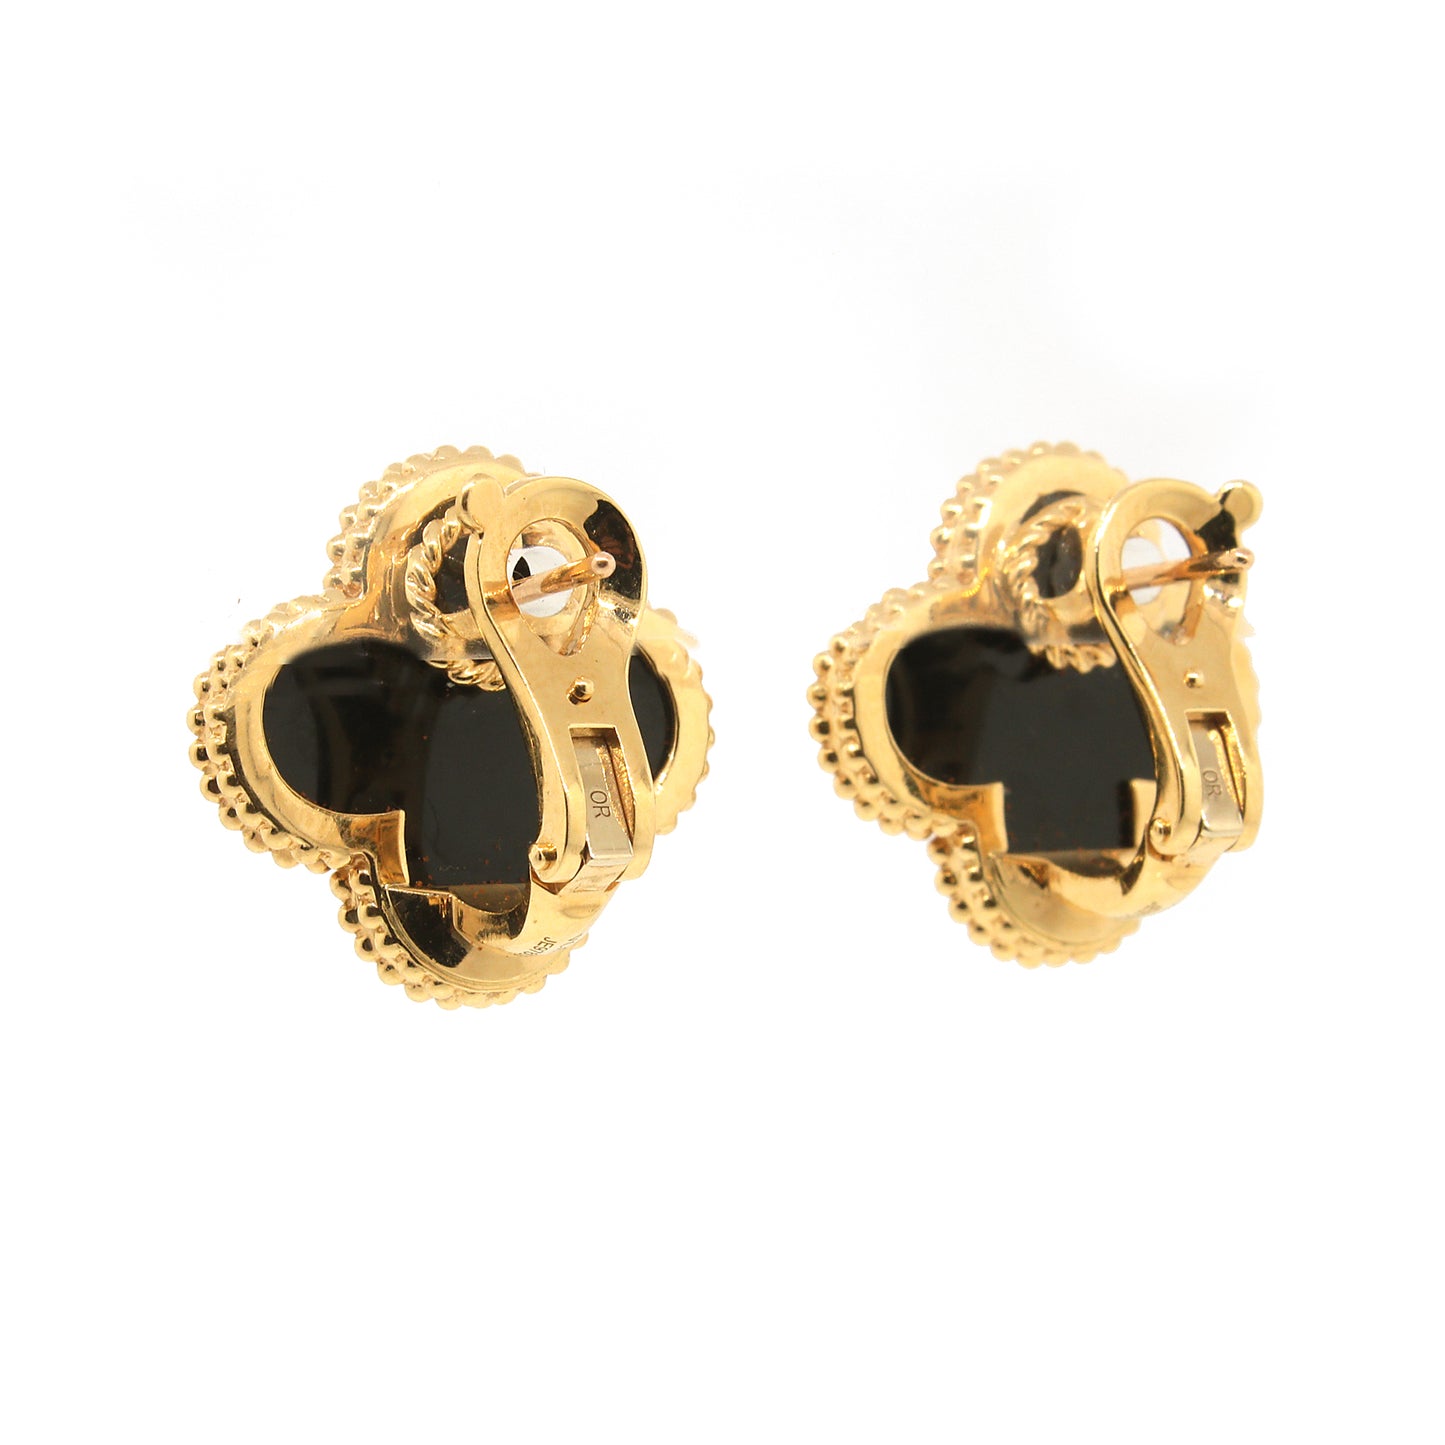 Magic Alhambra earrings by Van Cleef & Arpels  Van cleef and arpels jewelry,  Van cleef and arpels, Van cleef